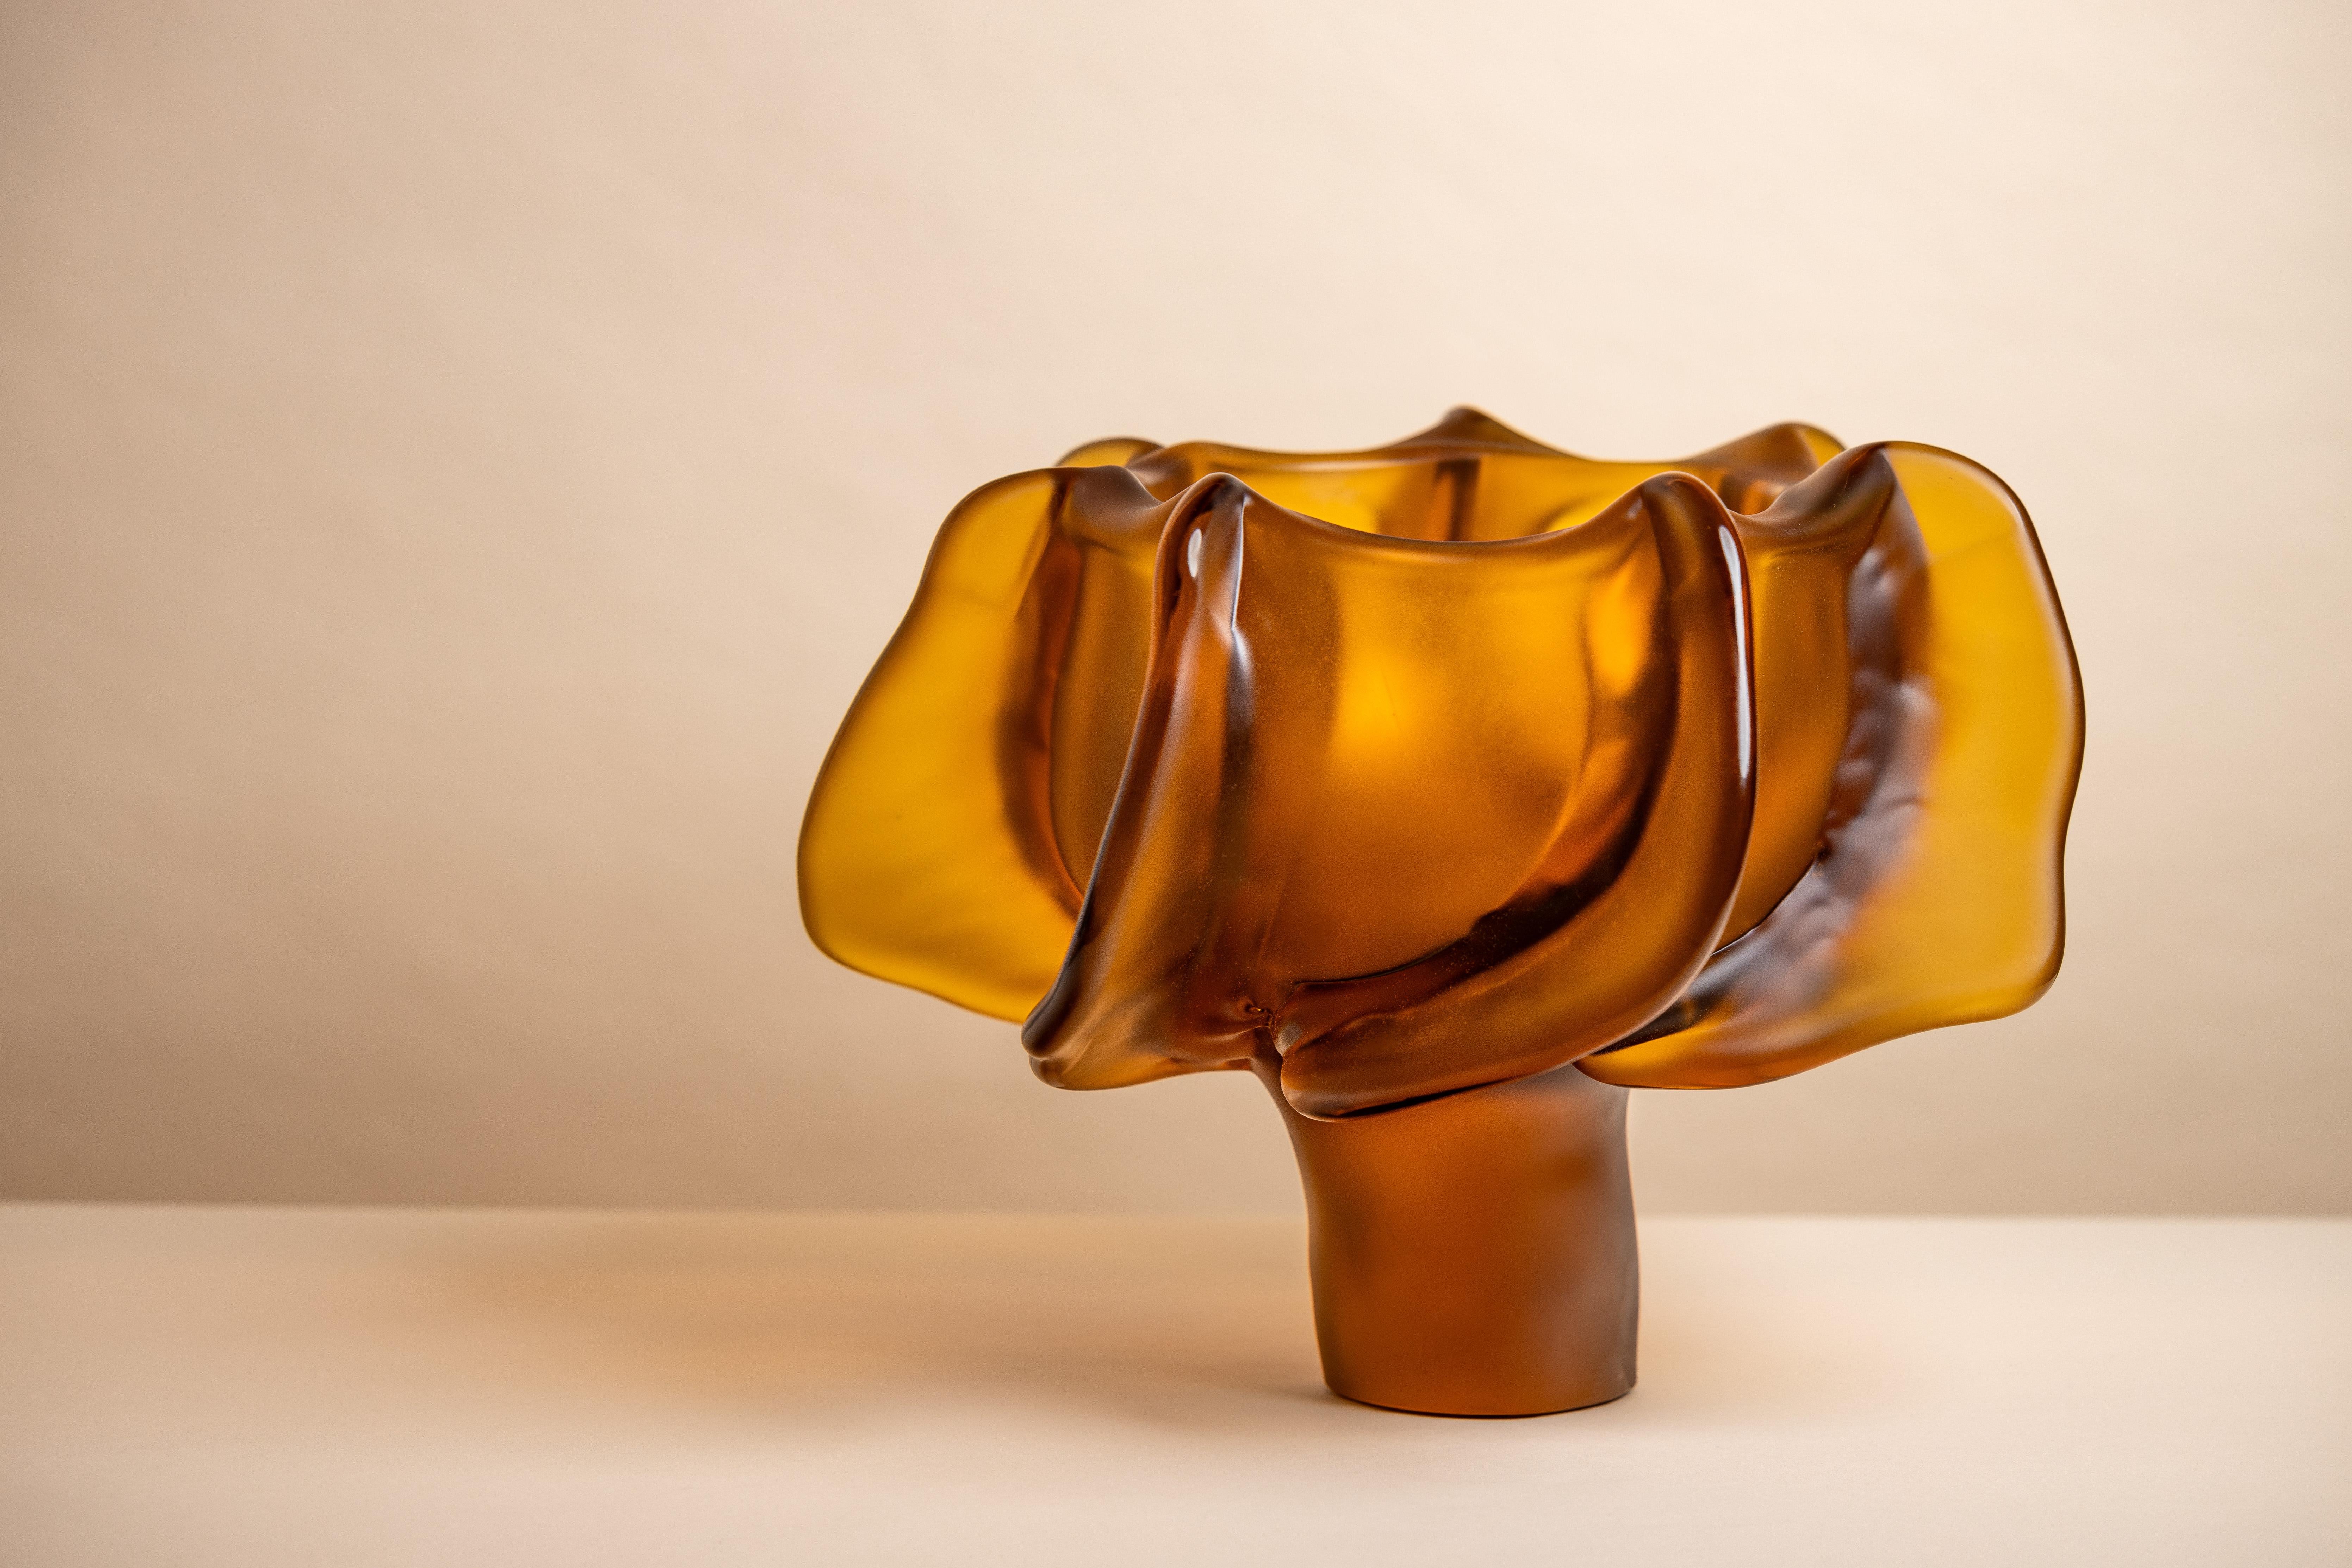 Nature se compose de pièces uniques en ambre, or, bordeaux foncé et hortensia, exprimant la fascination de Michela Cattai pour la nature dans toutes ses formes et manifestations imprévisibles. Chaque pièce a été fabriquée à Murano, selon la